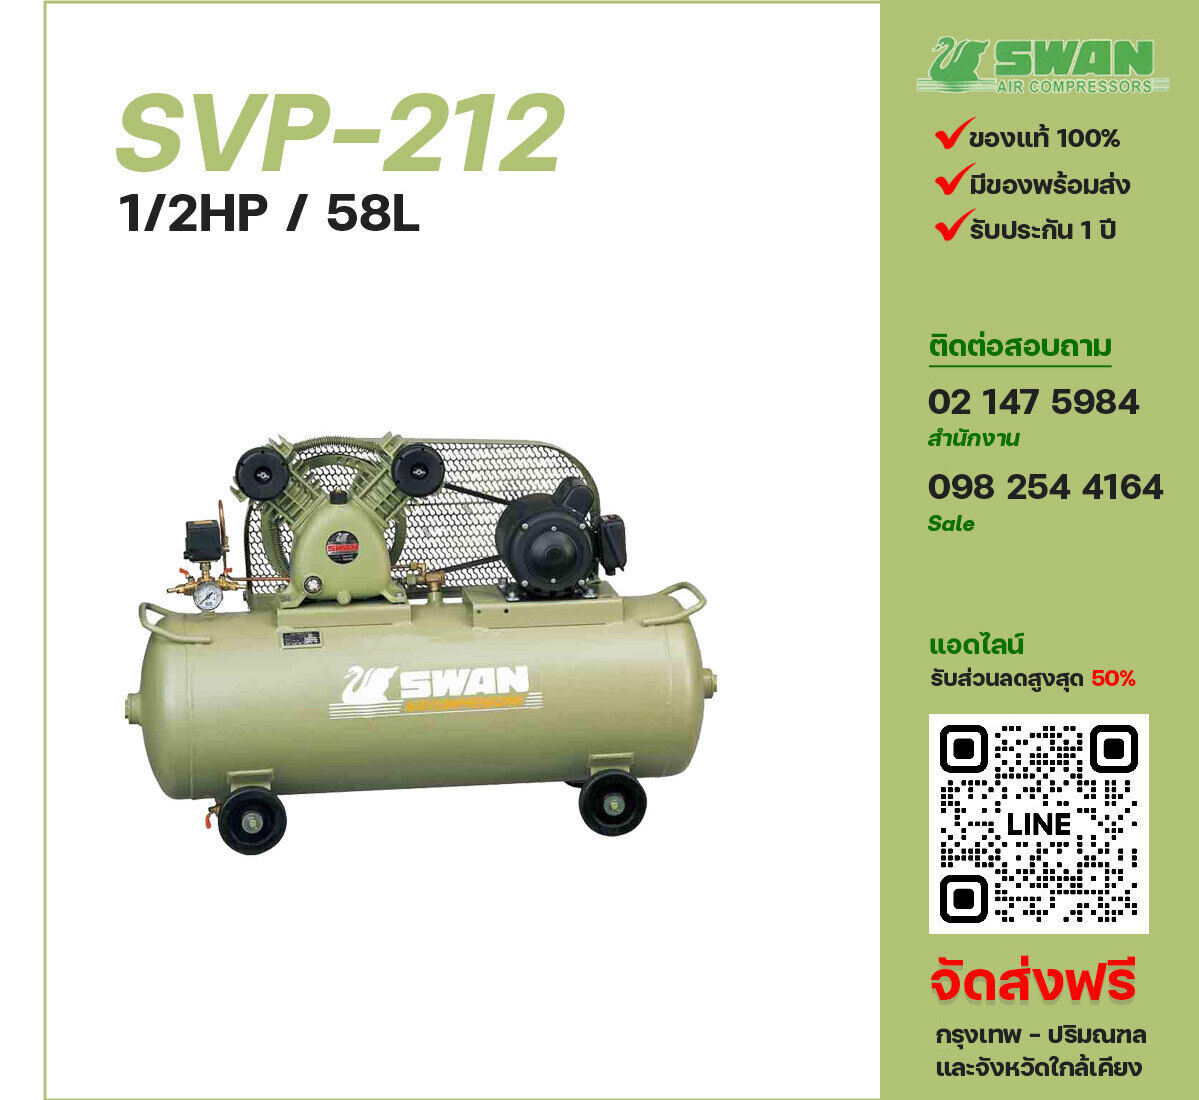 ปั๊มลมสวอน SWAN SVP-212 220V/380V ปั๊มลมลูกสูบ ขนาด 2 สูบ 1/2 แรงม้า 58 ลิตร SWAN พร้อมมอเตอร์ ไฟ 220V/380V ส่งฟรี กรุงเทพฯ-ปริมณฑล รับประกัน 1 ปี